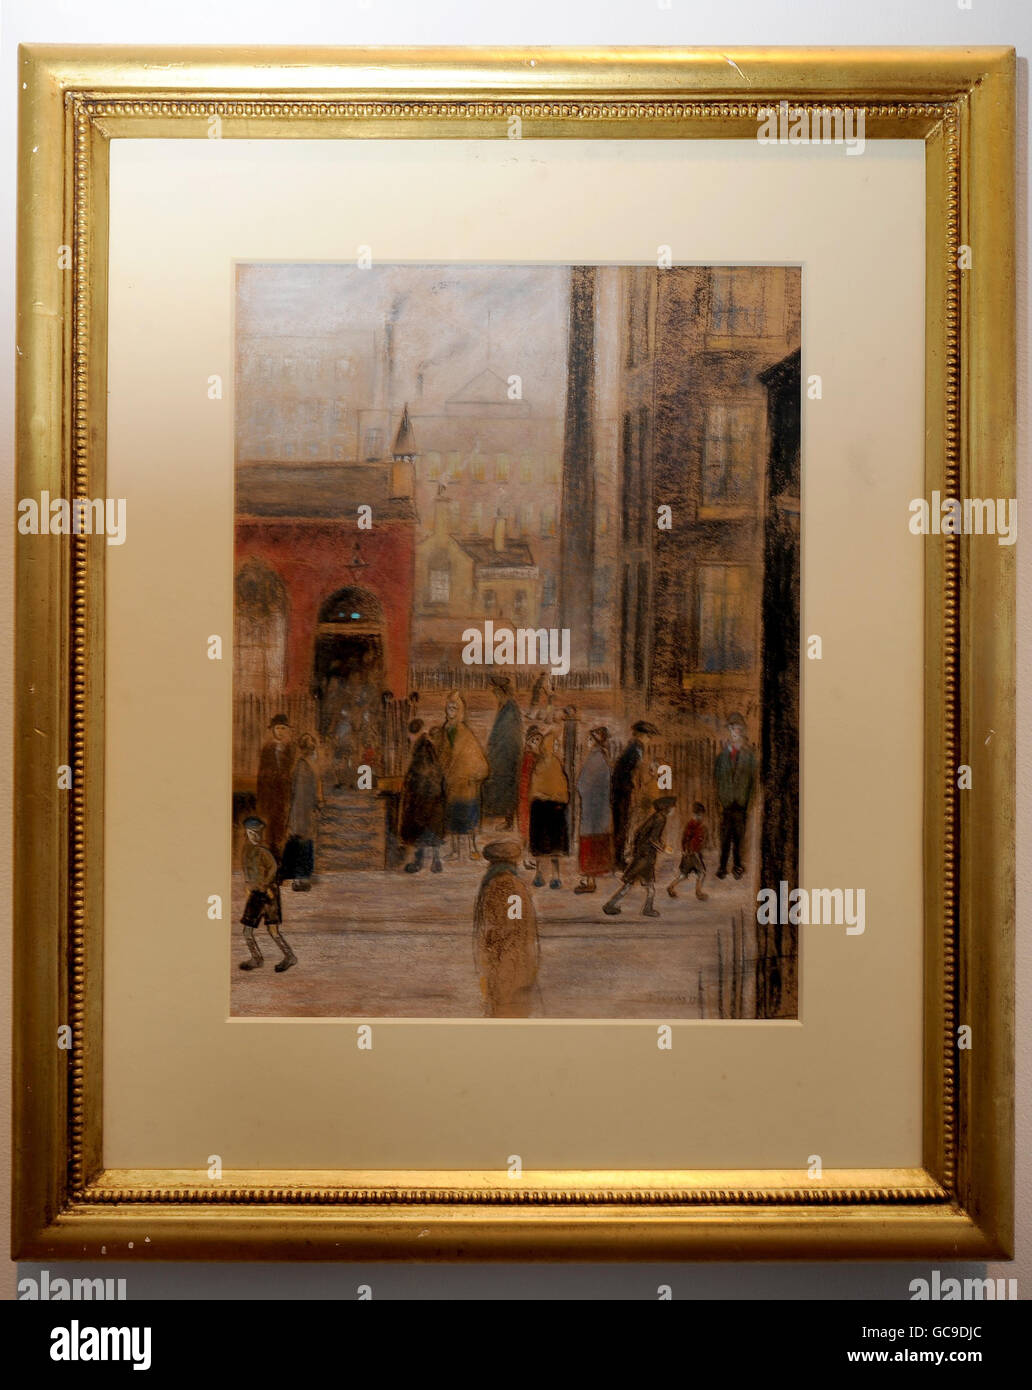 Una falsa pintura de Lowry en exhibición durante la vista previa de una nueva exposición sobre el "Arte del crimen" que incluye falsificaciones famosas, en el Victoria and Albert Museum, Londres. Foto de stock